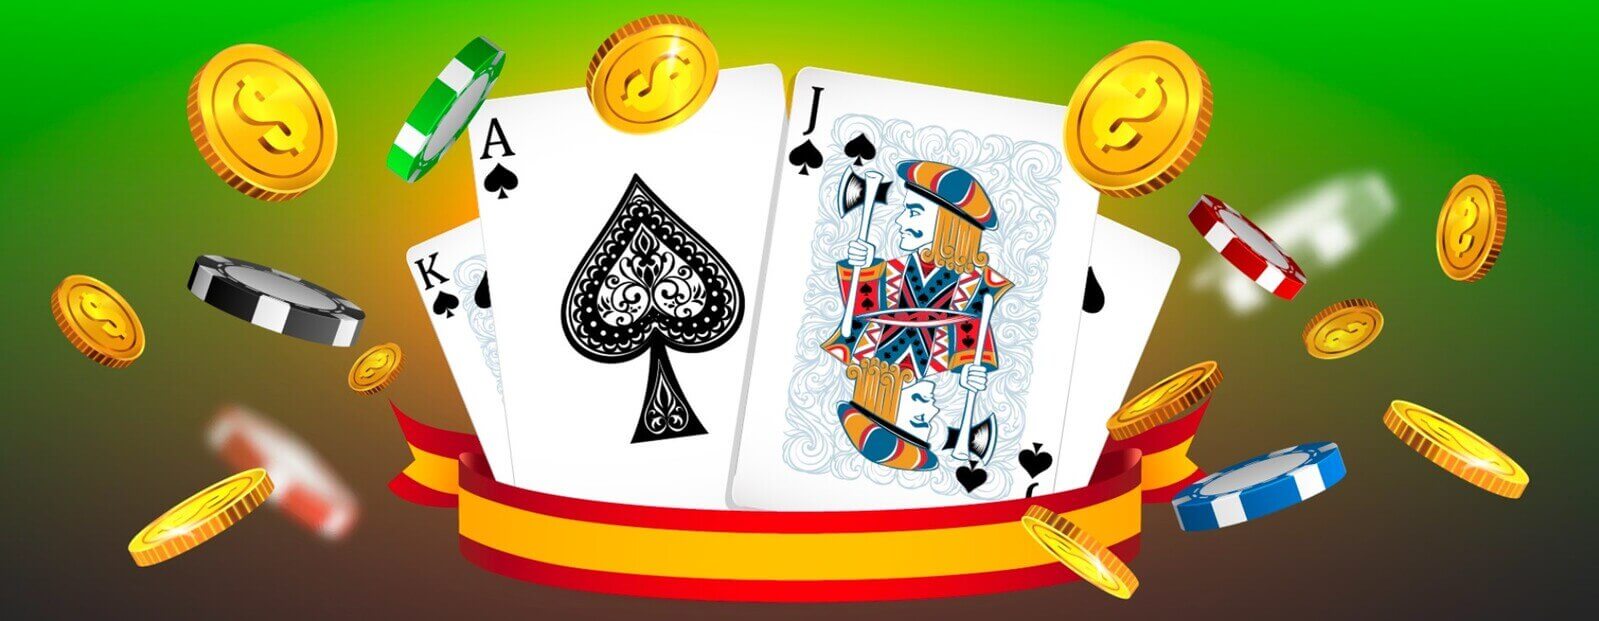 Mejores juegos de blackjack online gratis en España